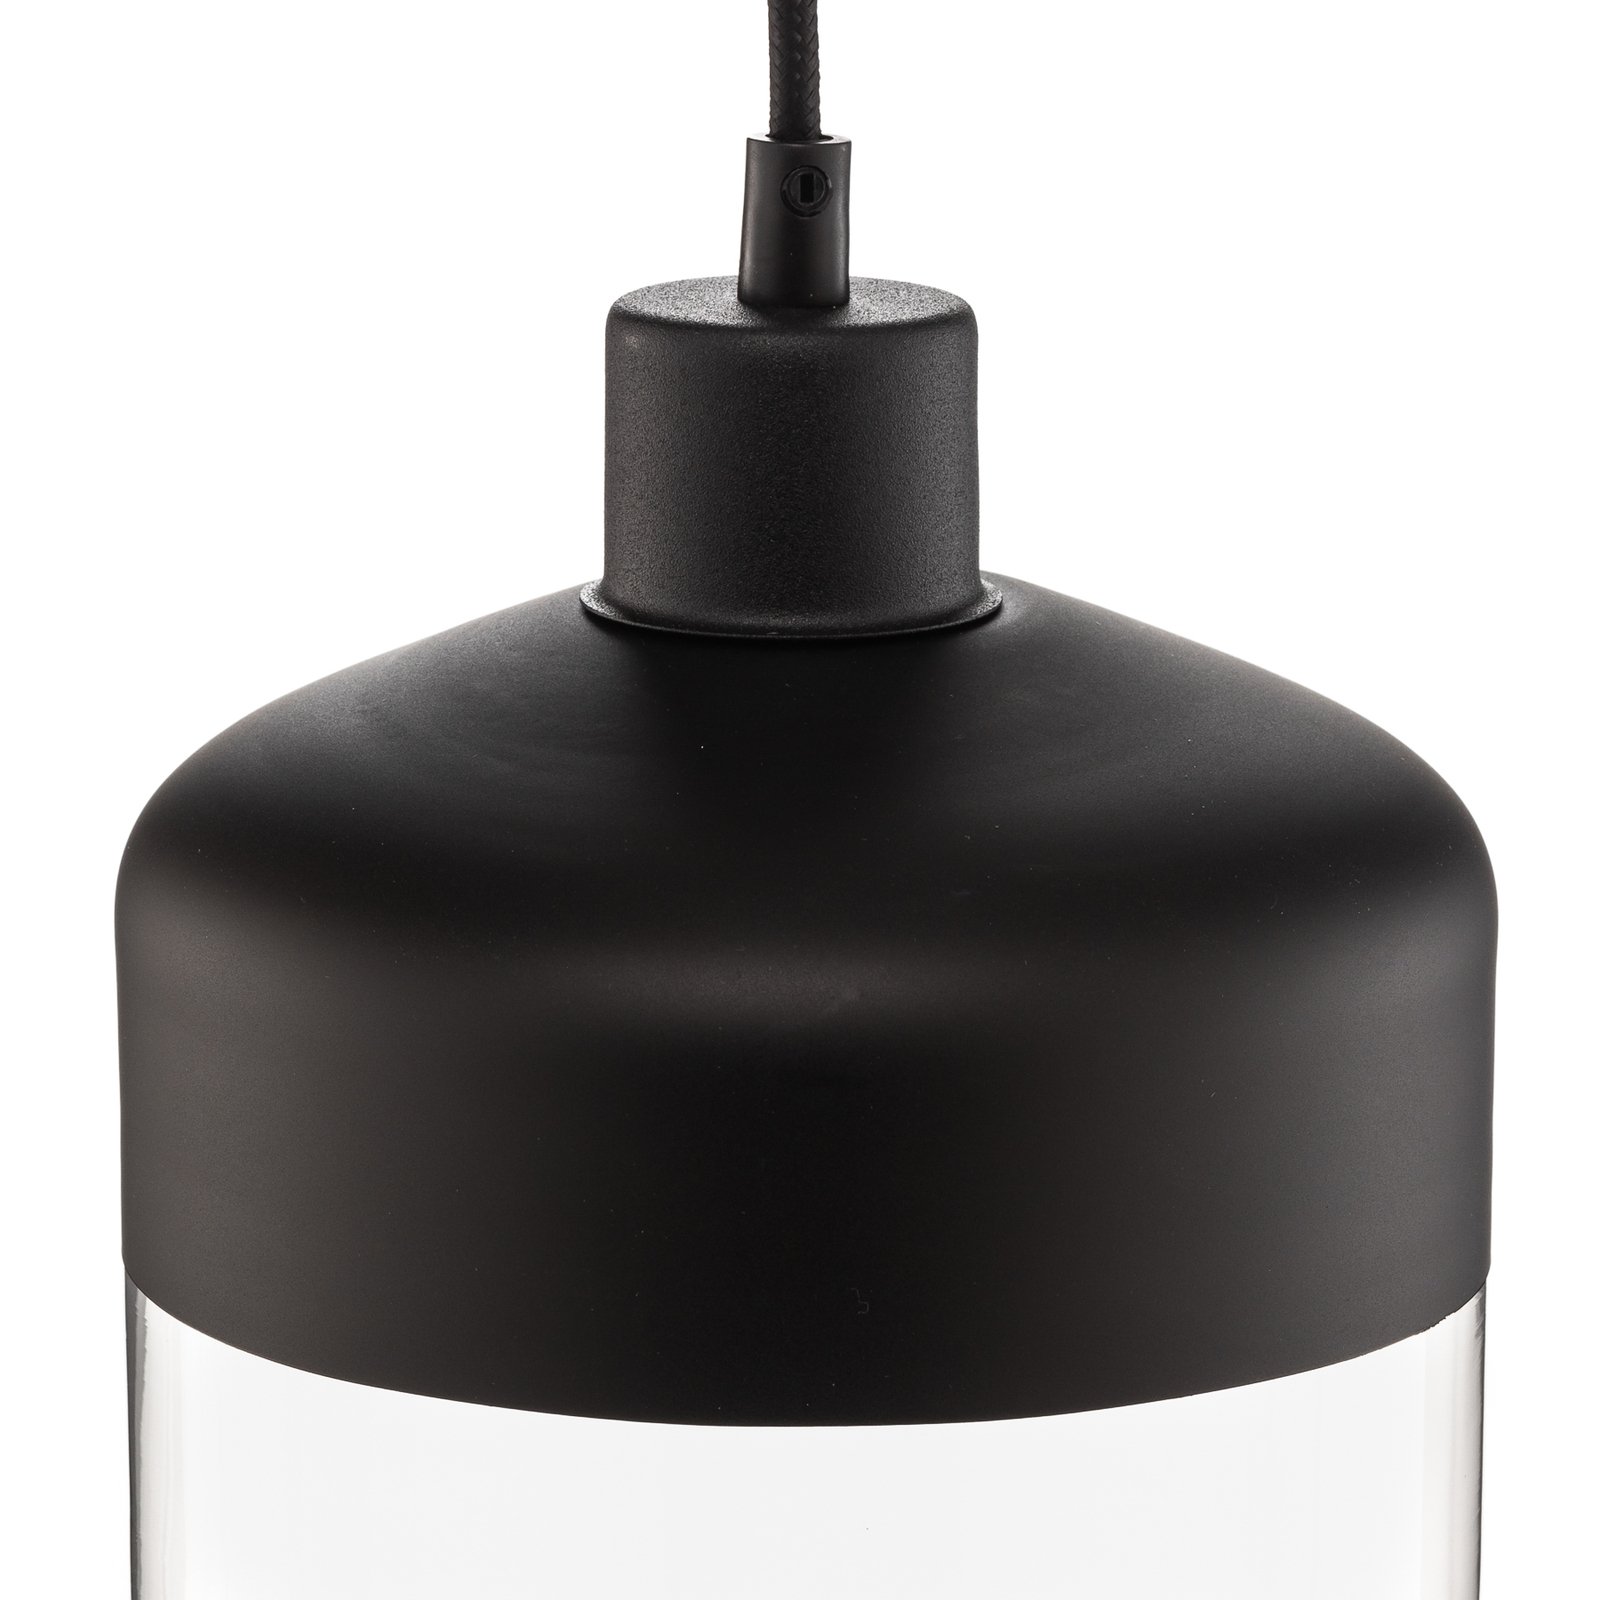 Hanglamp Monochrome Flash helder/zwart Ø 17cm